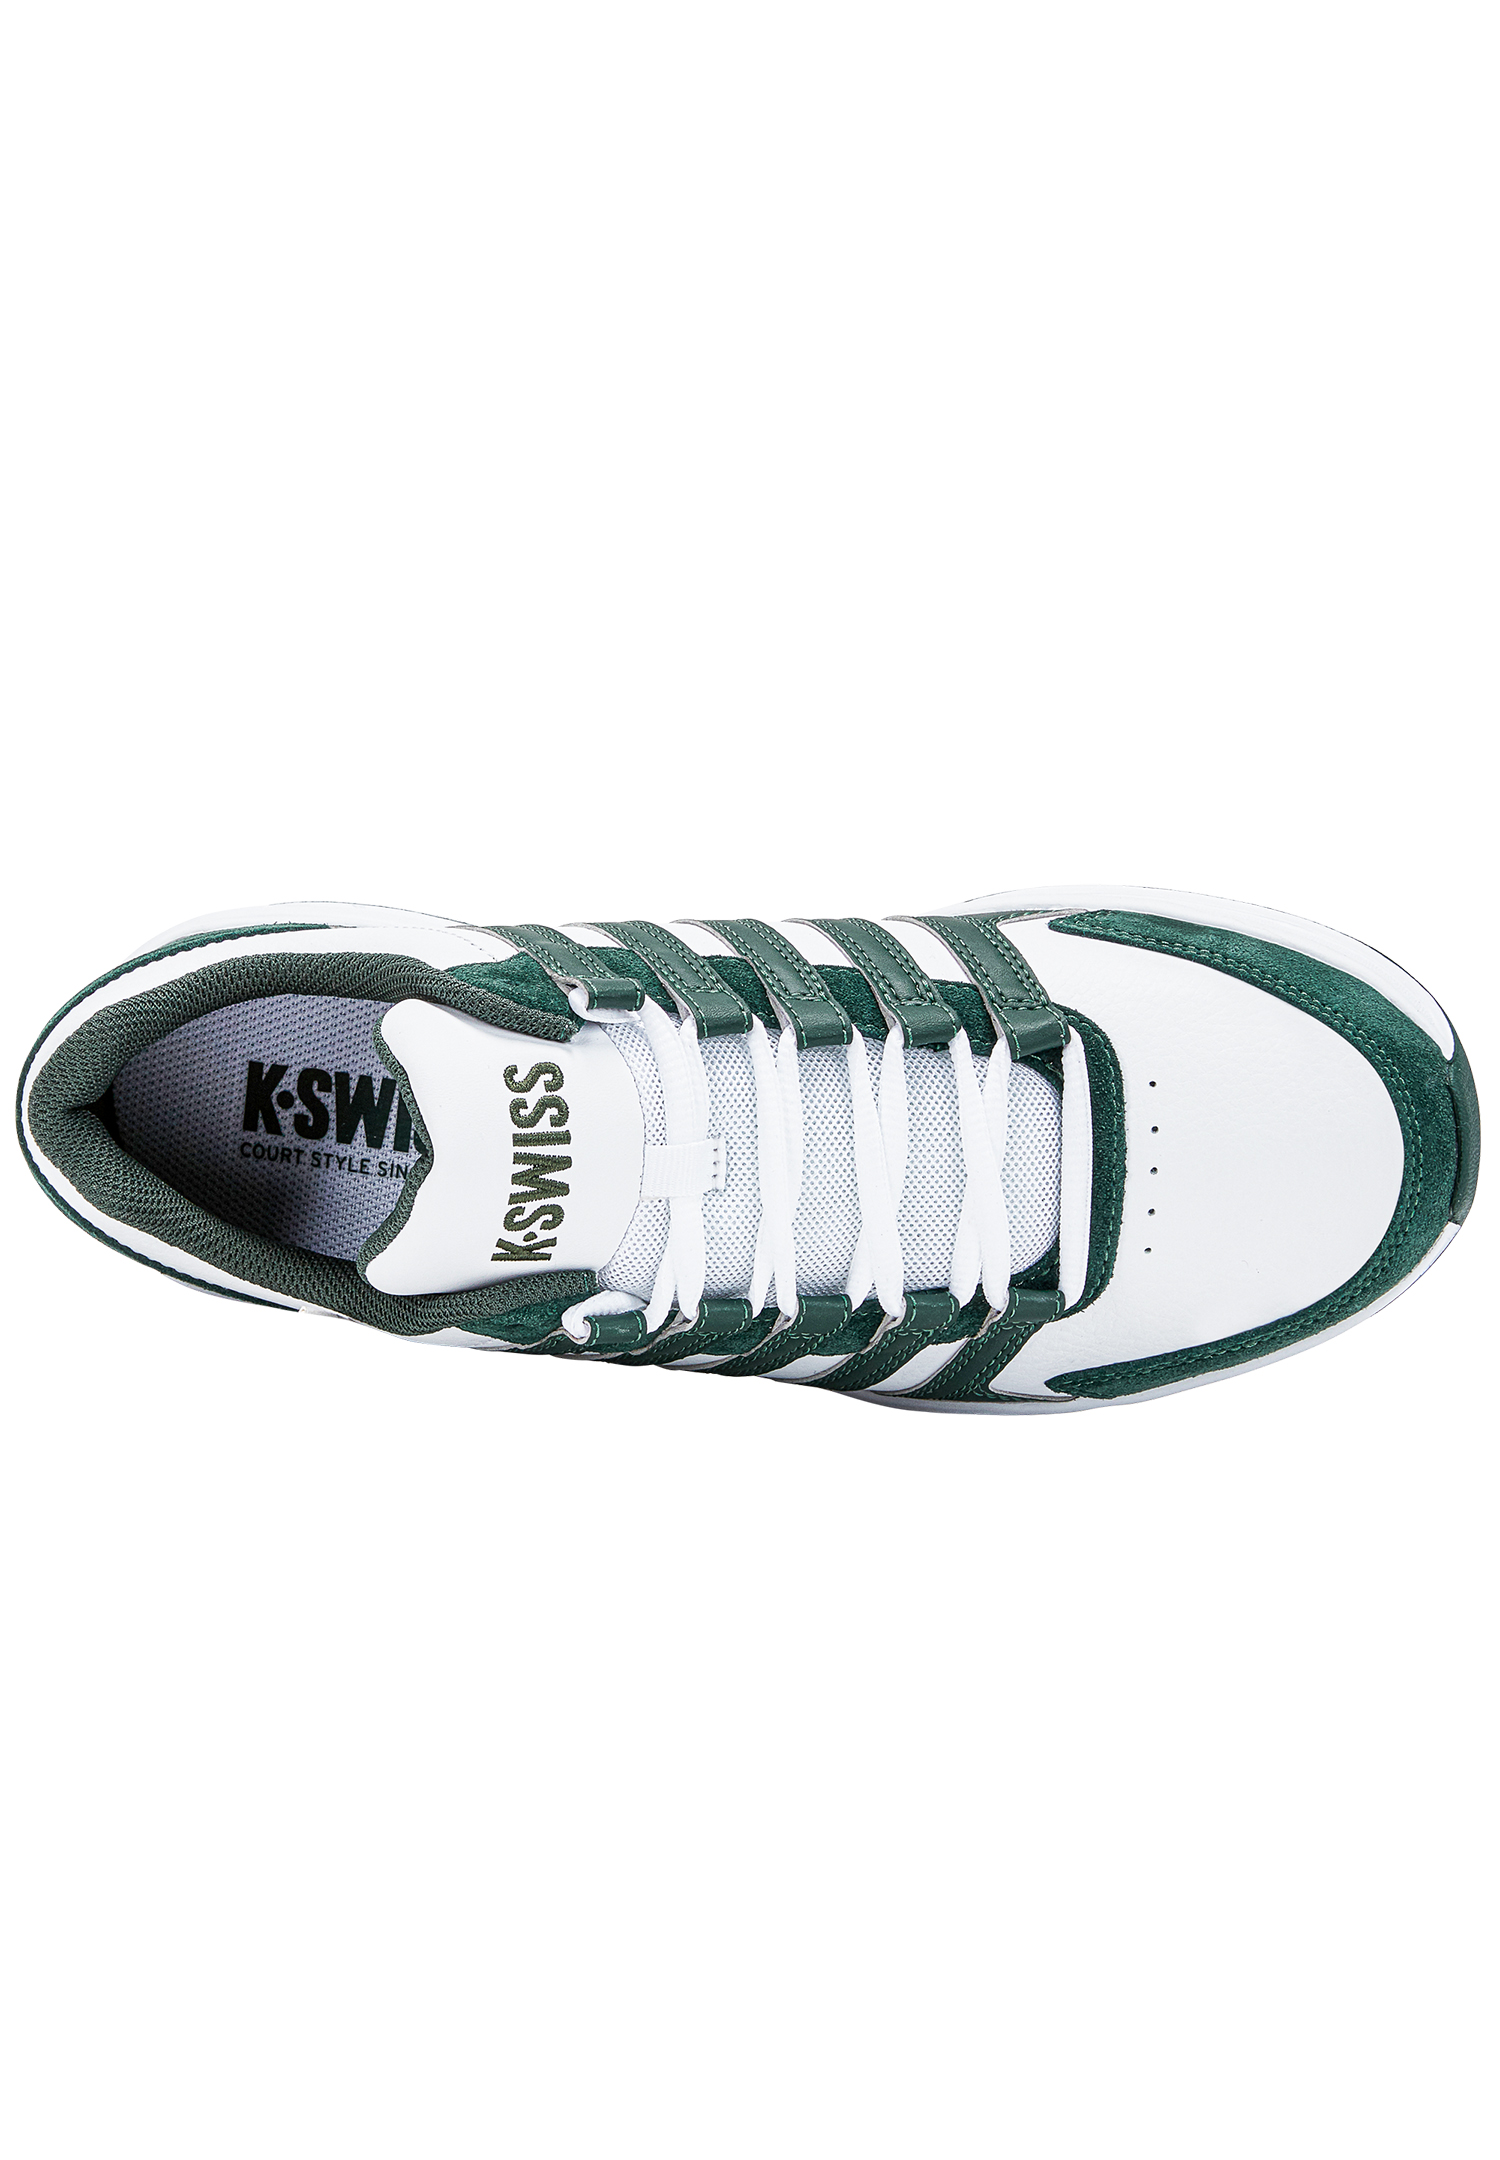 K-Swiss Herren Vista Trainer Sneaker Sportschuh 07000-108-M weiss/grün